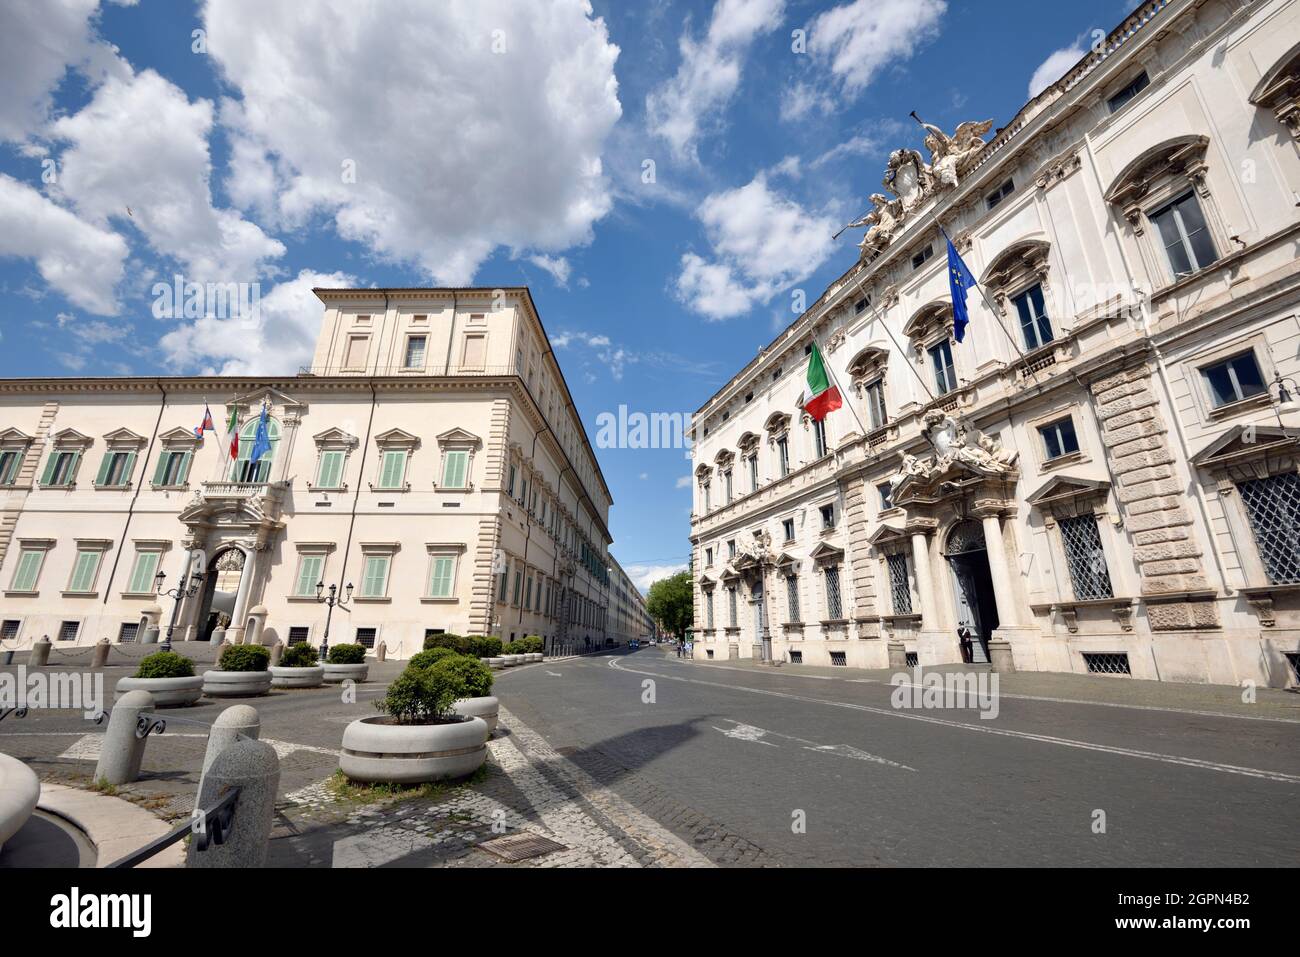 Italie, Rome, Piazza del Quirinale, Palazzo del Quirinale et Palazzo della Consulta (Corte Costituzionale, Cour constitutionnelle) Banque D'Images